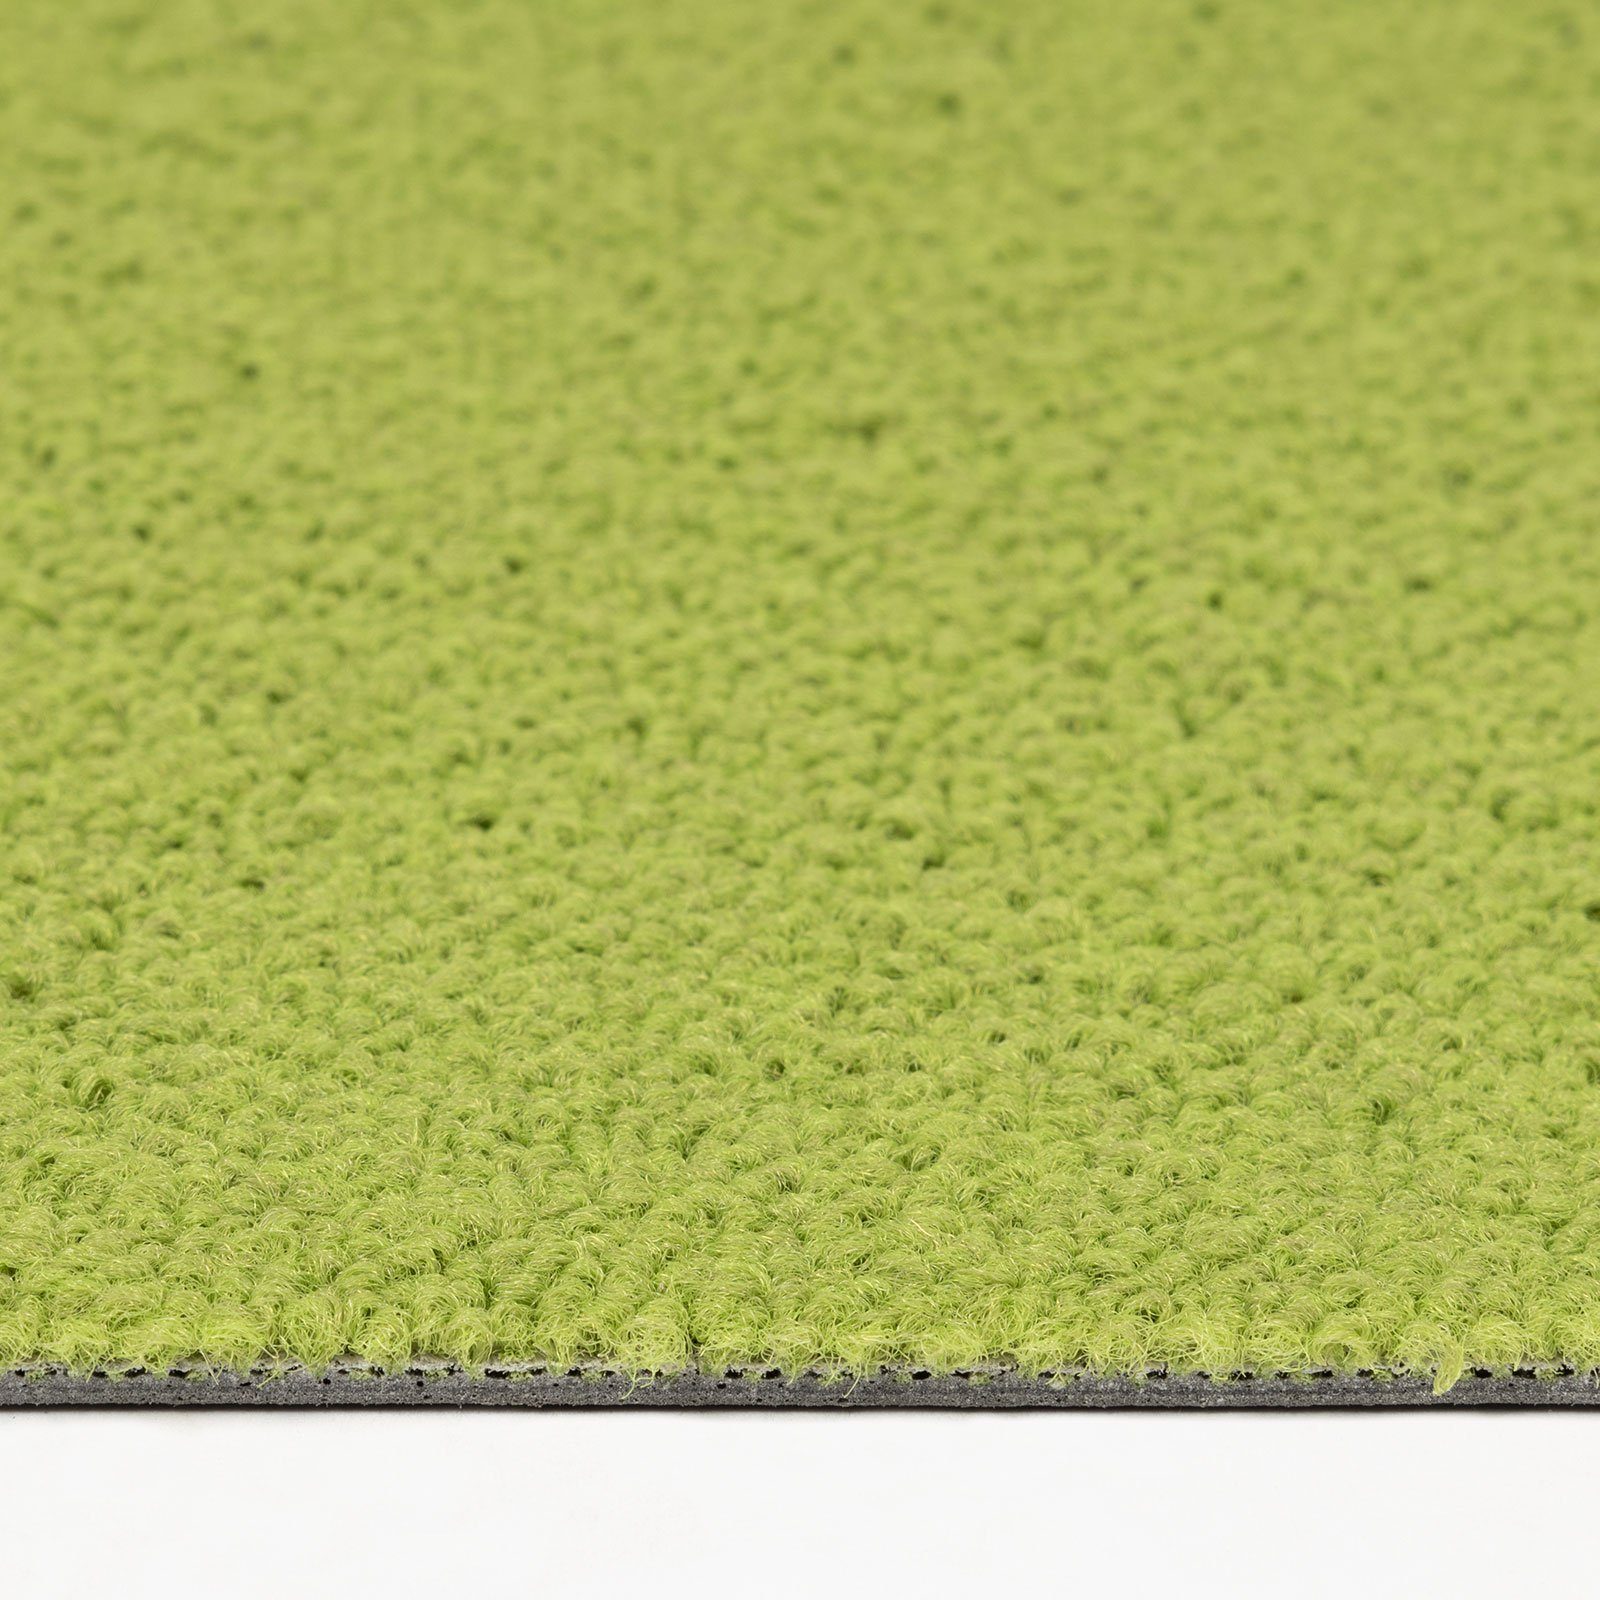 verschiedene Grün Nottingham, Farben, Bodenschutz, Karat, mm Fliese, Teppichfliese 50x50 5.2 cm, Höhe: